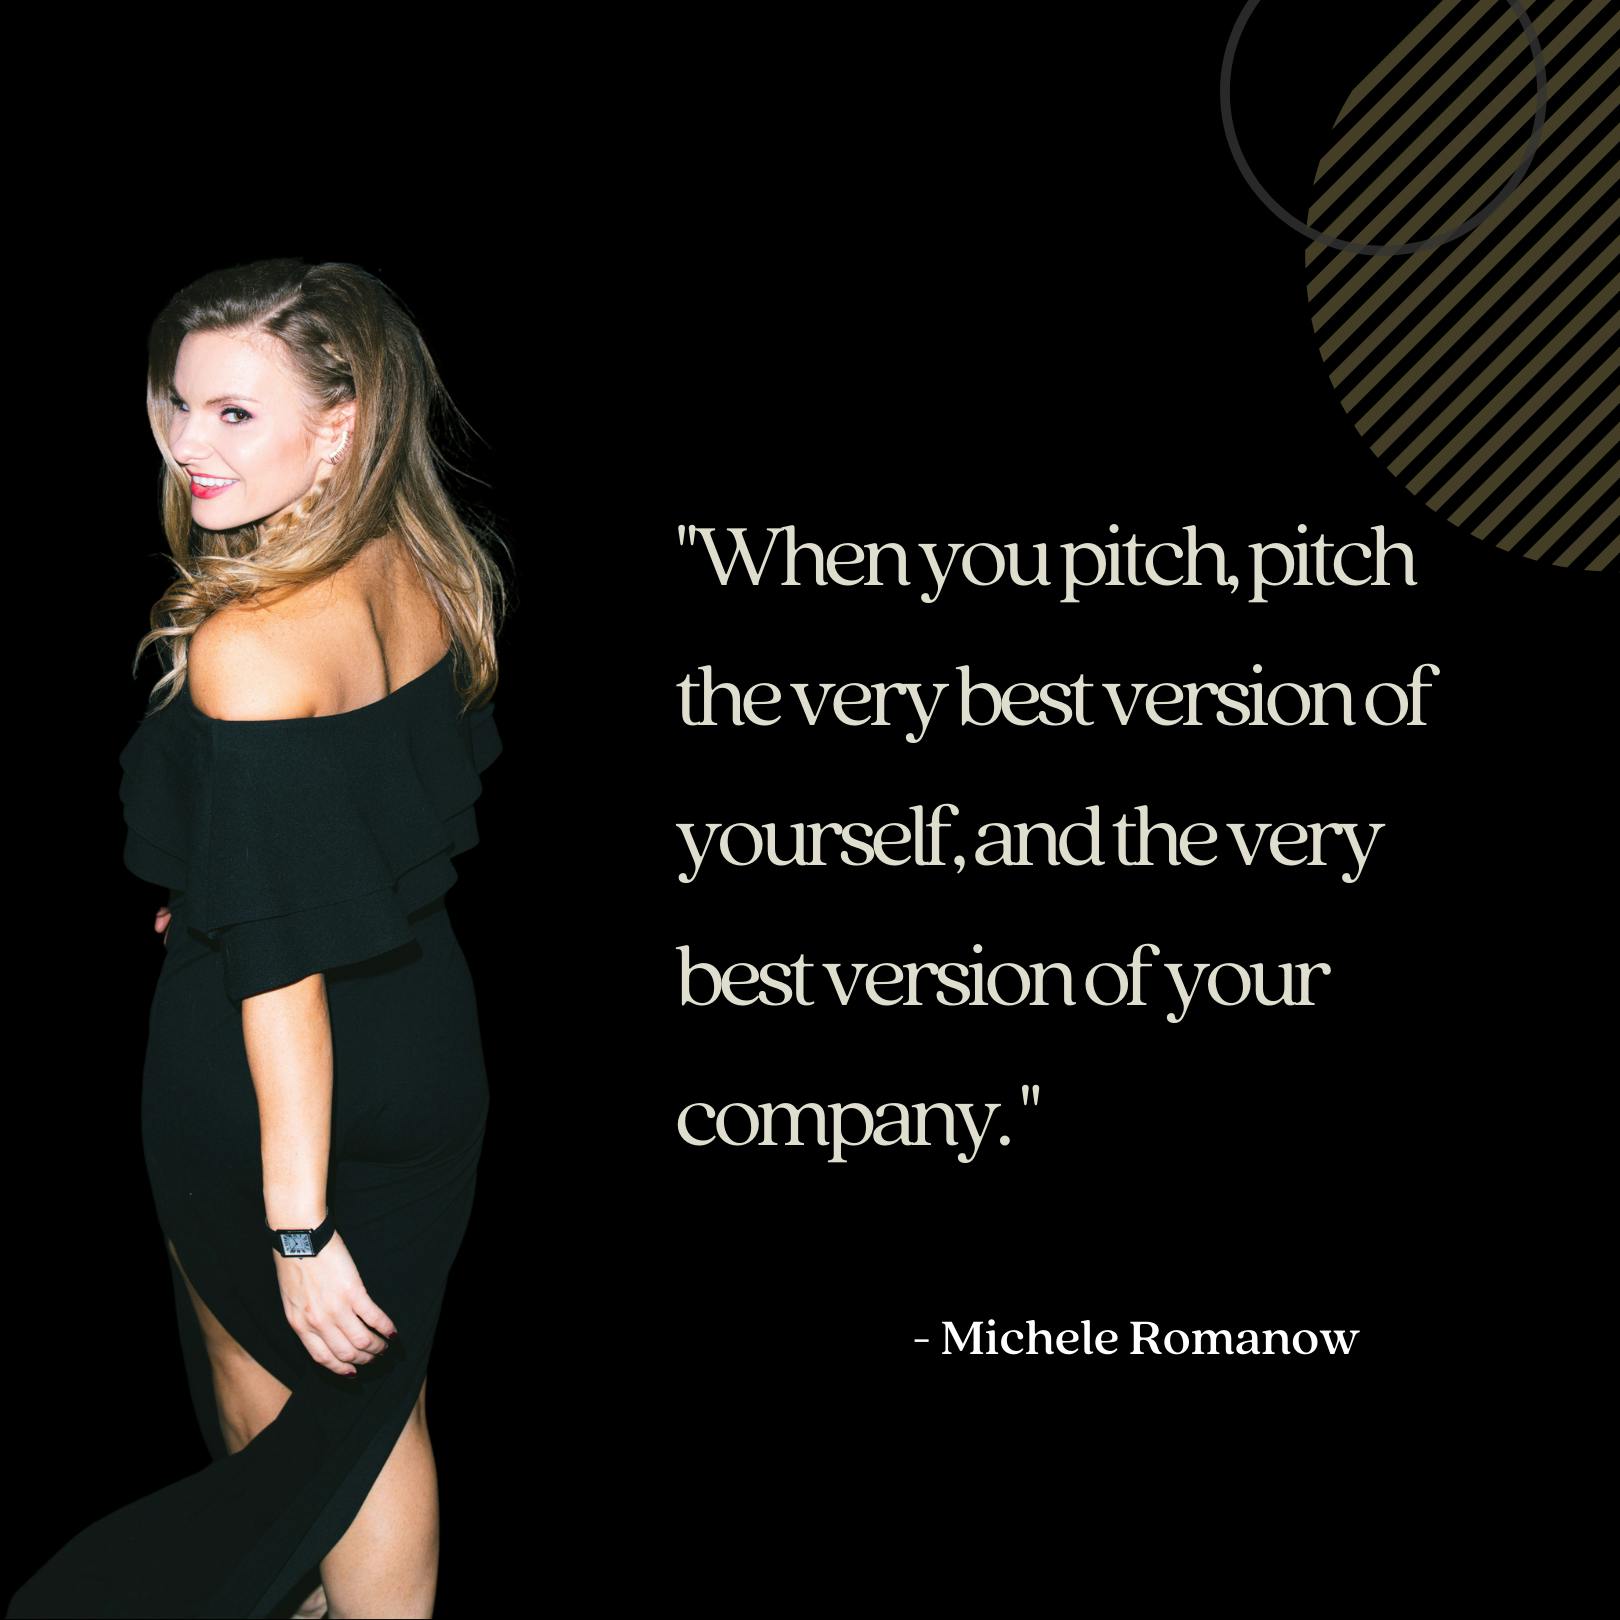 Michele Romanow quote